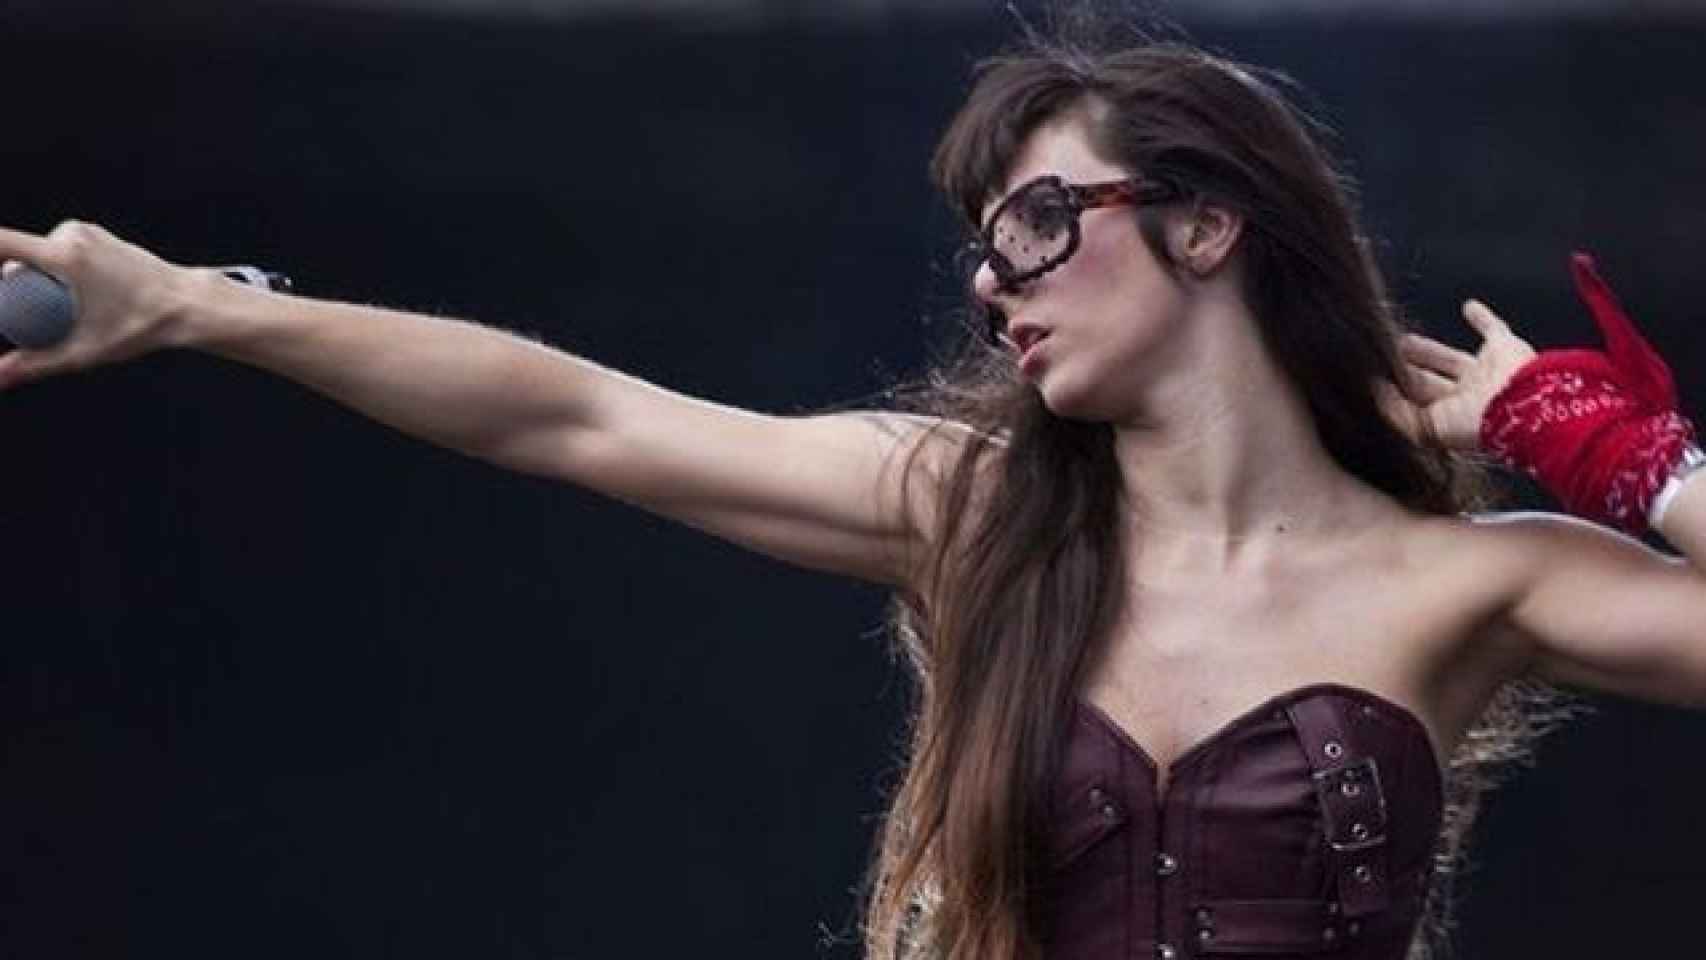 La Mala Rodríguez, la rapera española con más repecursión a nivel nacional e internacional. EFE